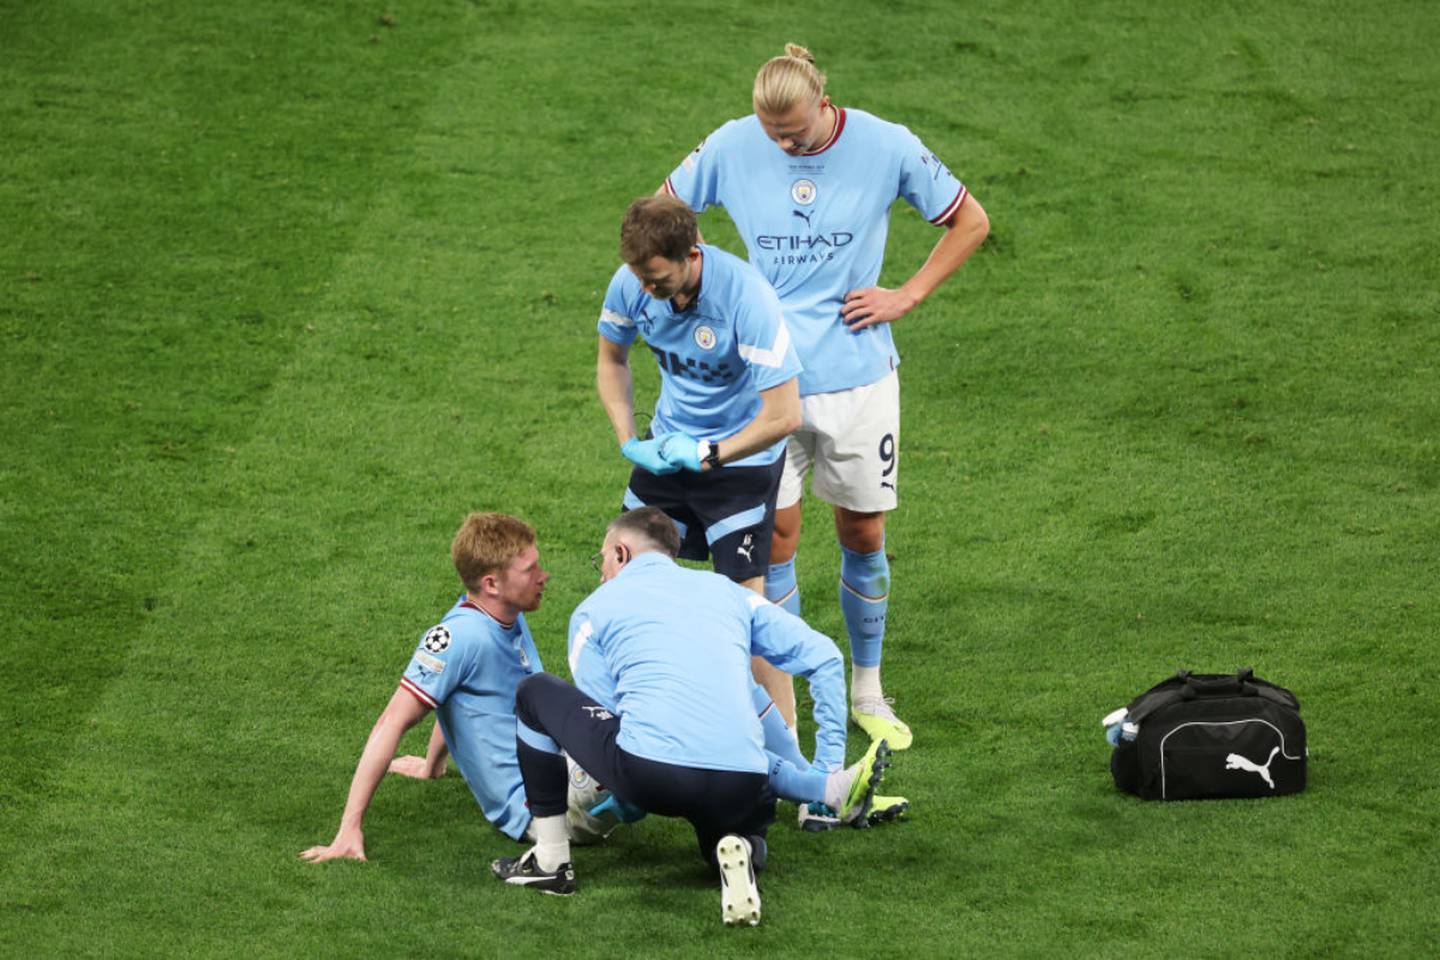 El delantero Kevin de Bruyne, recibe atención médica durante la final de la Champions League, mientas su compañero de equipo Erling Haaland observa.